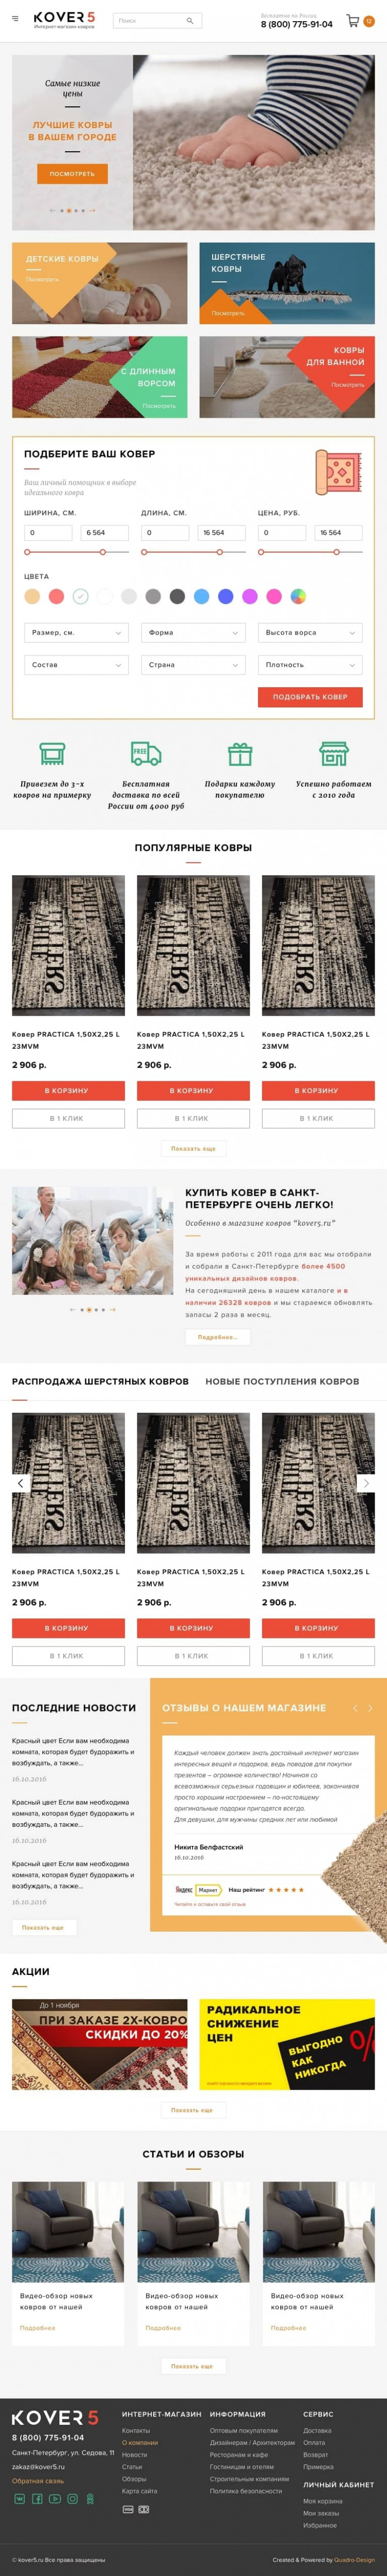 Создание интернет-магазина продажи ковров на crm shop script под ключ